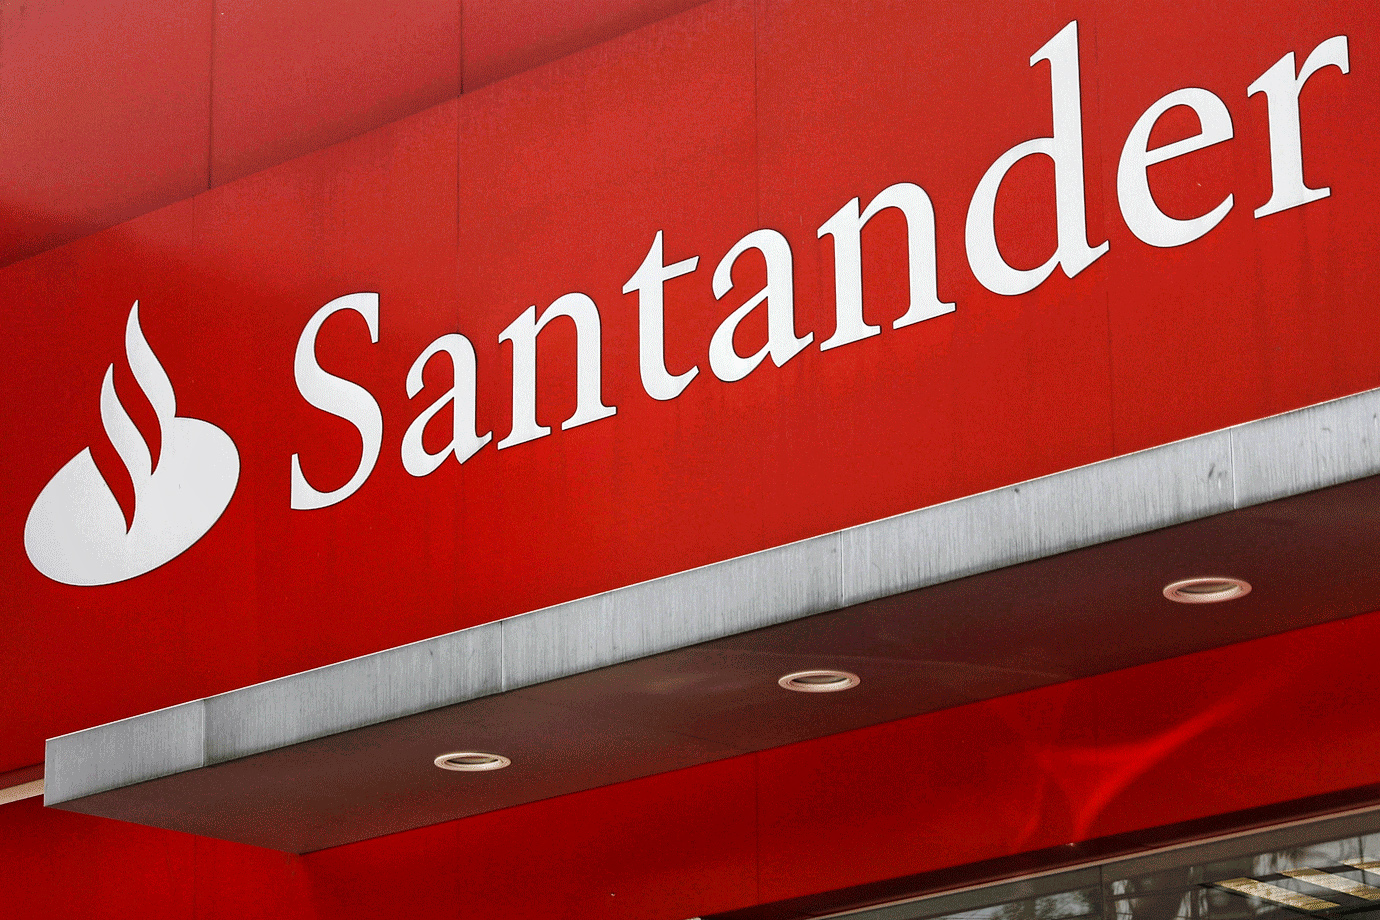 Empréstimo Consignado Santander